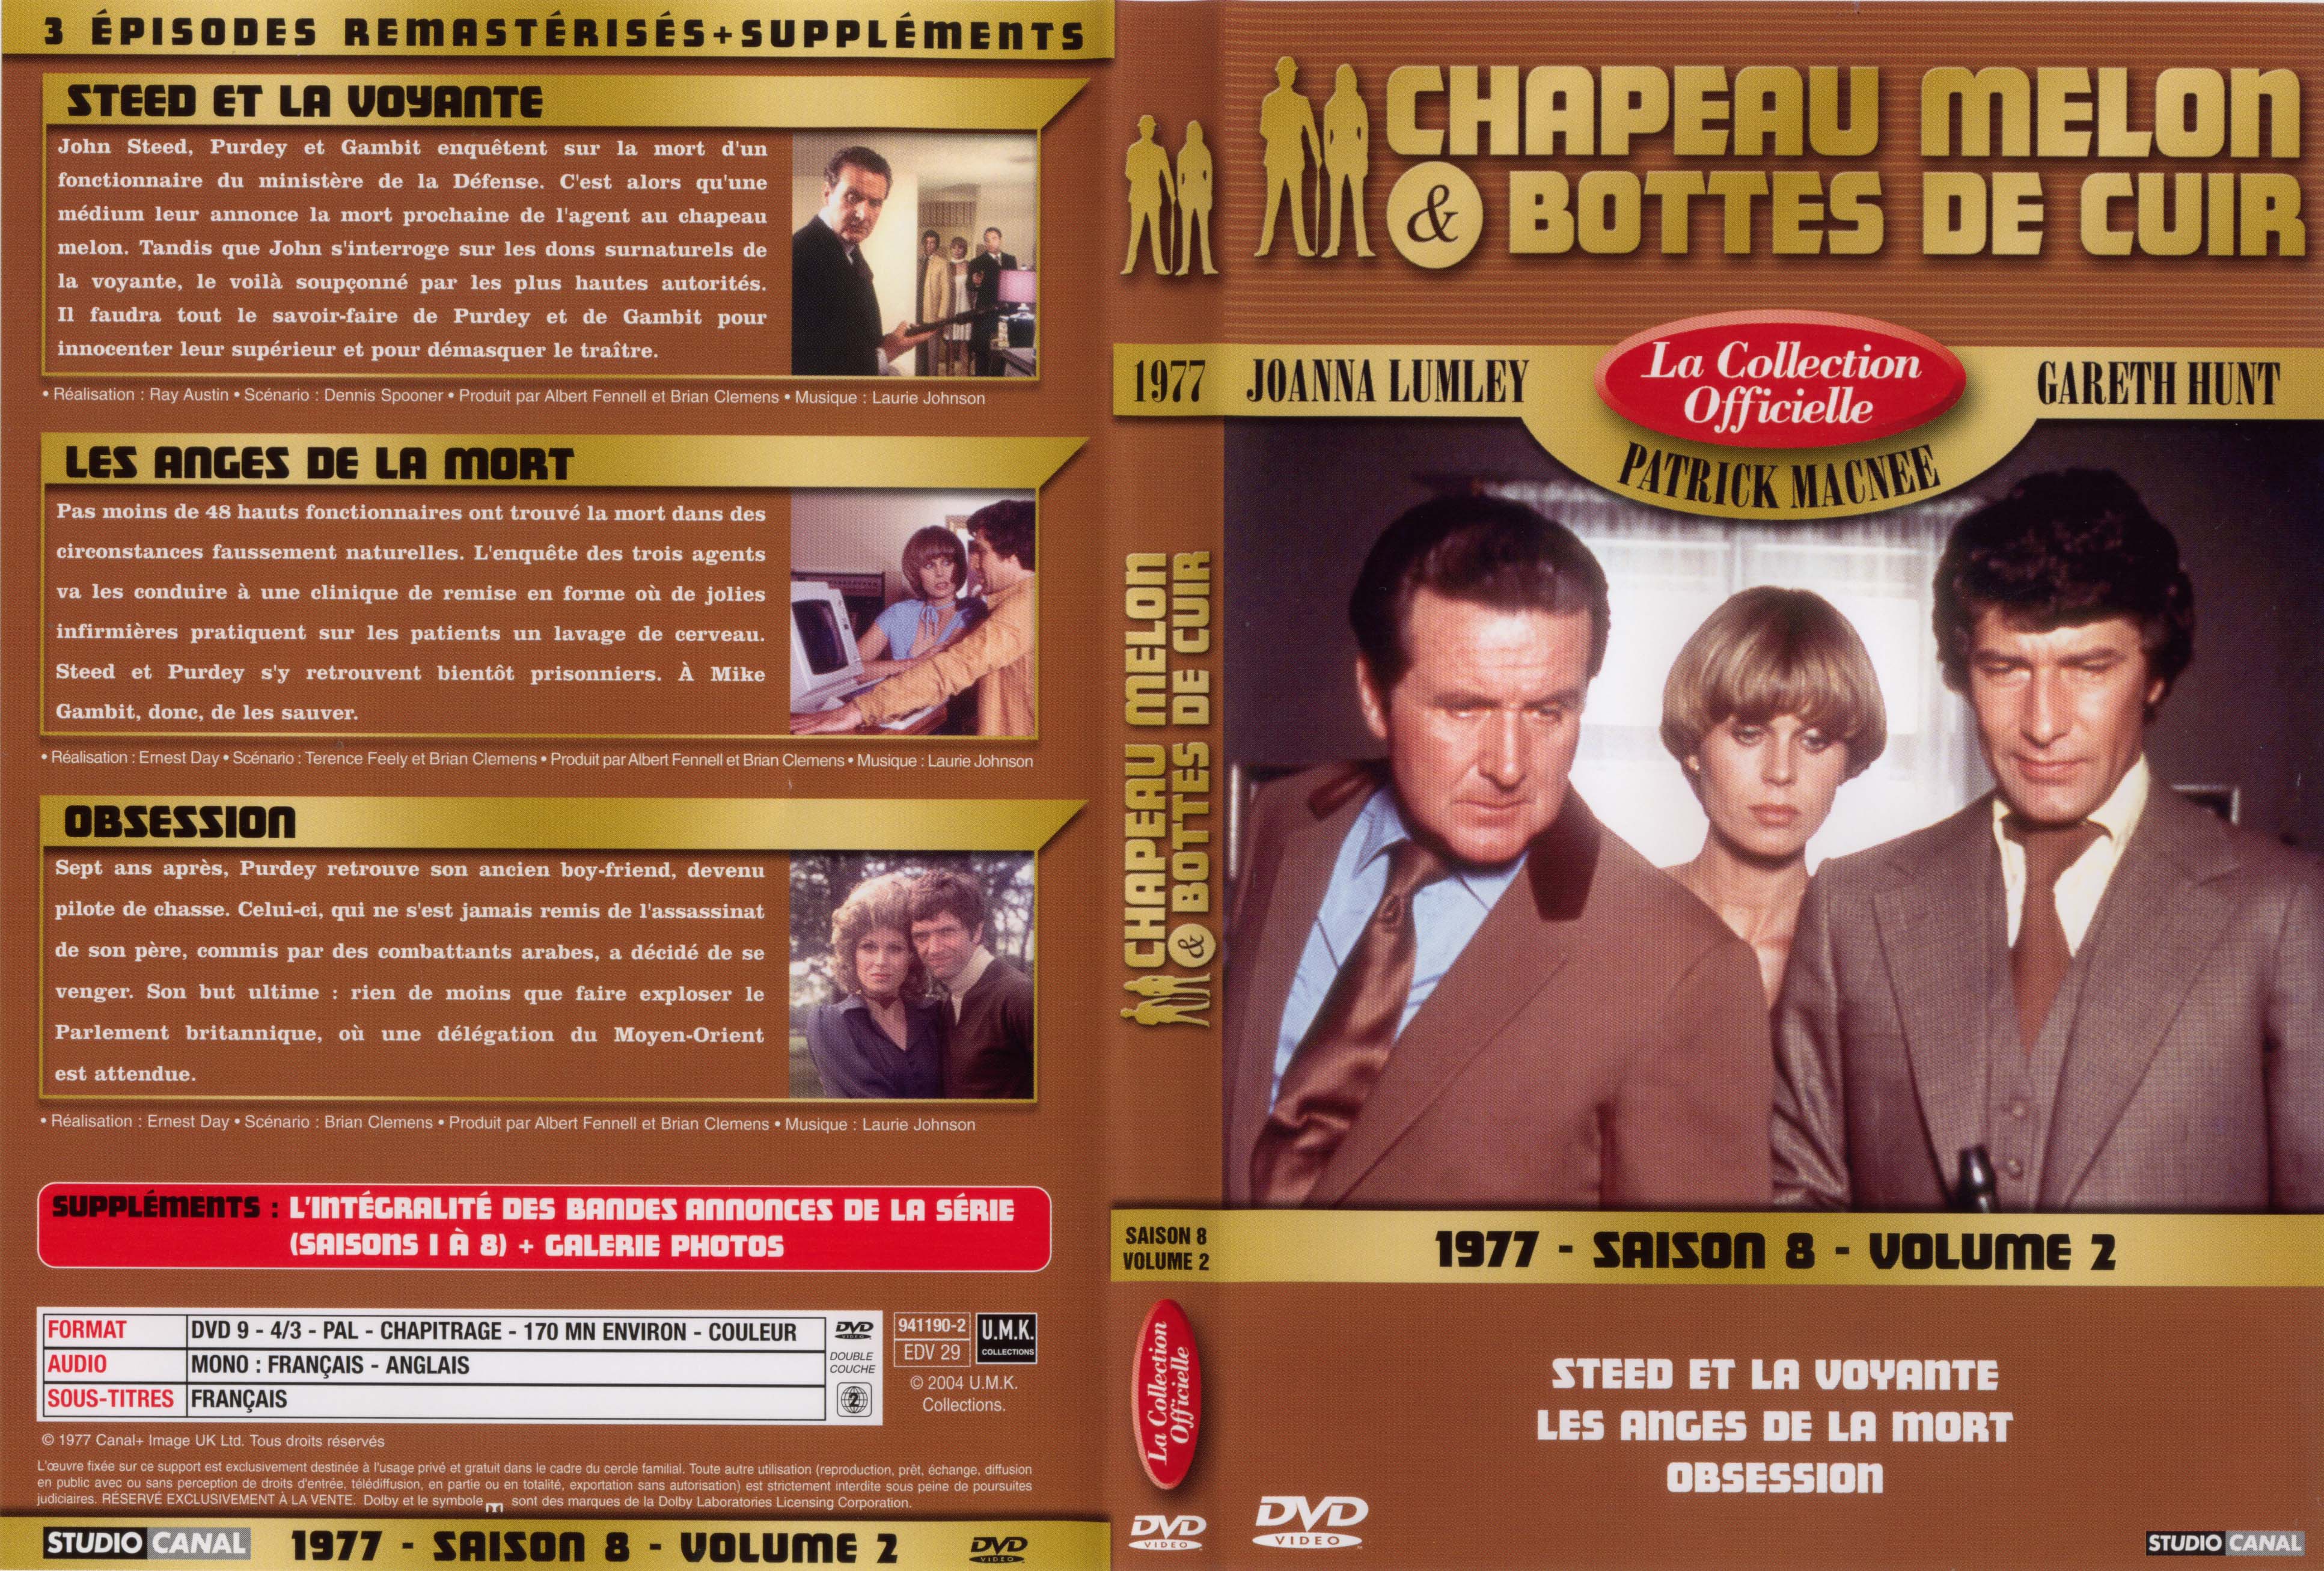 Jaquette DVD Chapeau melon et bottes de cuir 1977 saison 8 vol 2